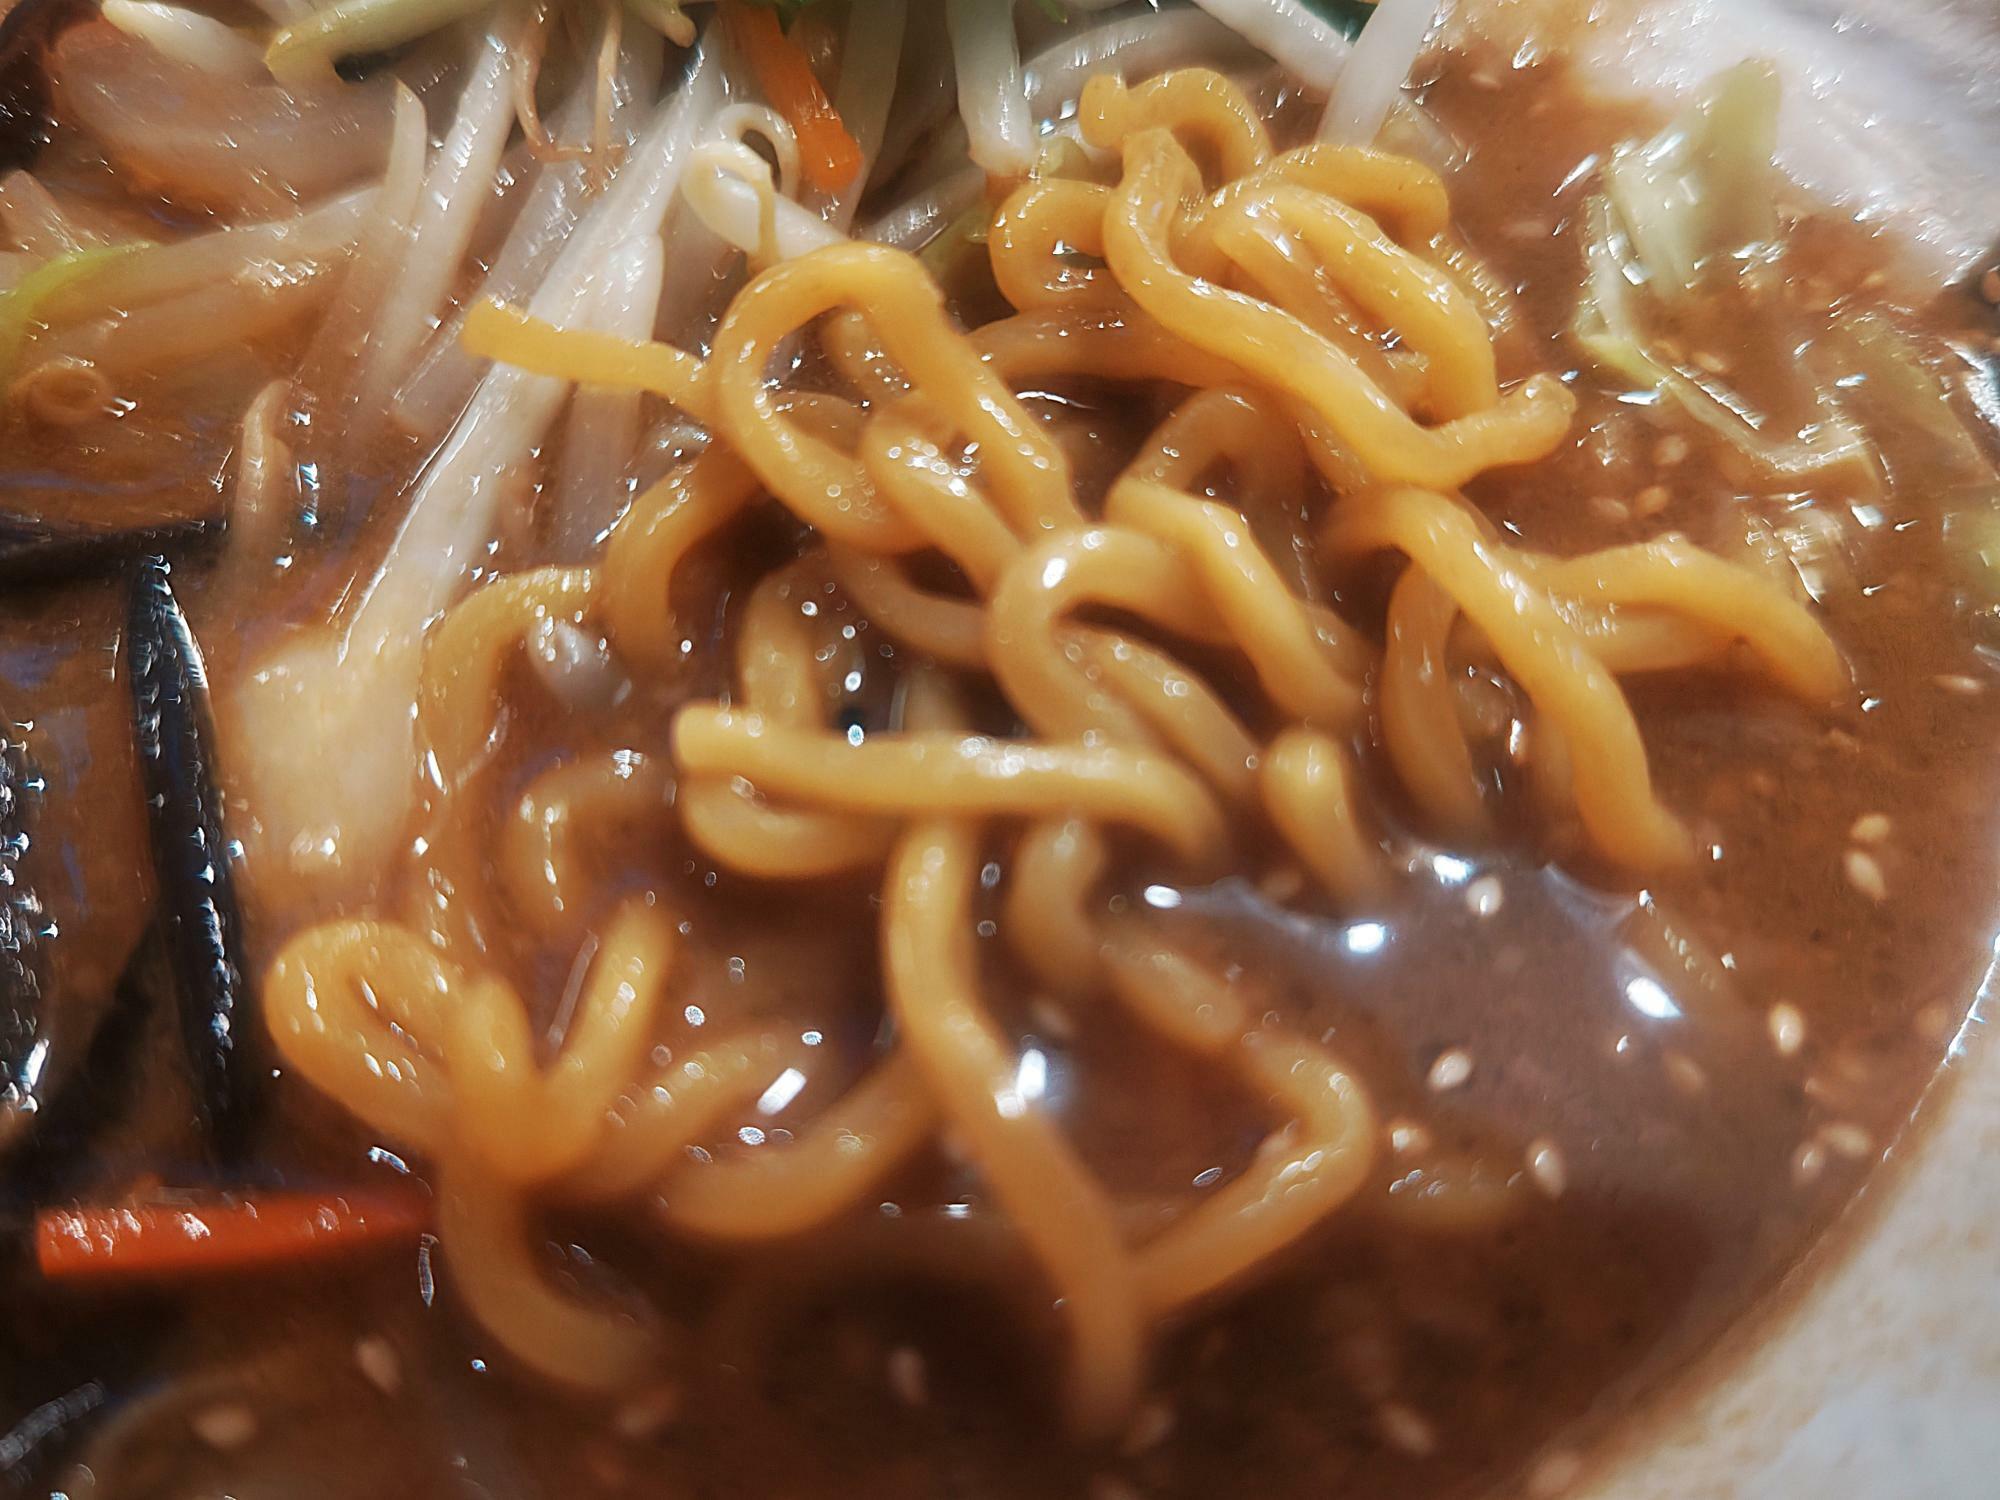 コシのある特製の太麺に濃厚なスープが絡みます。